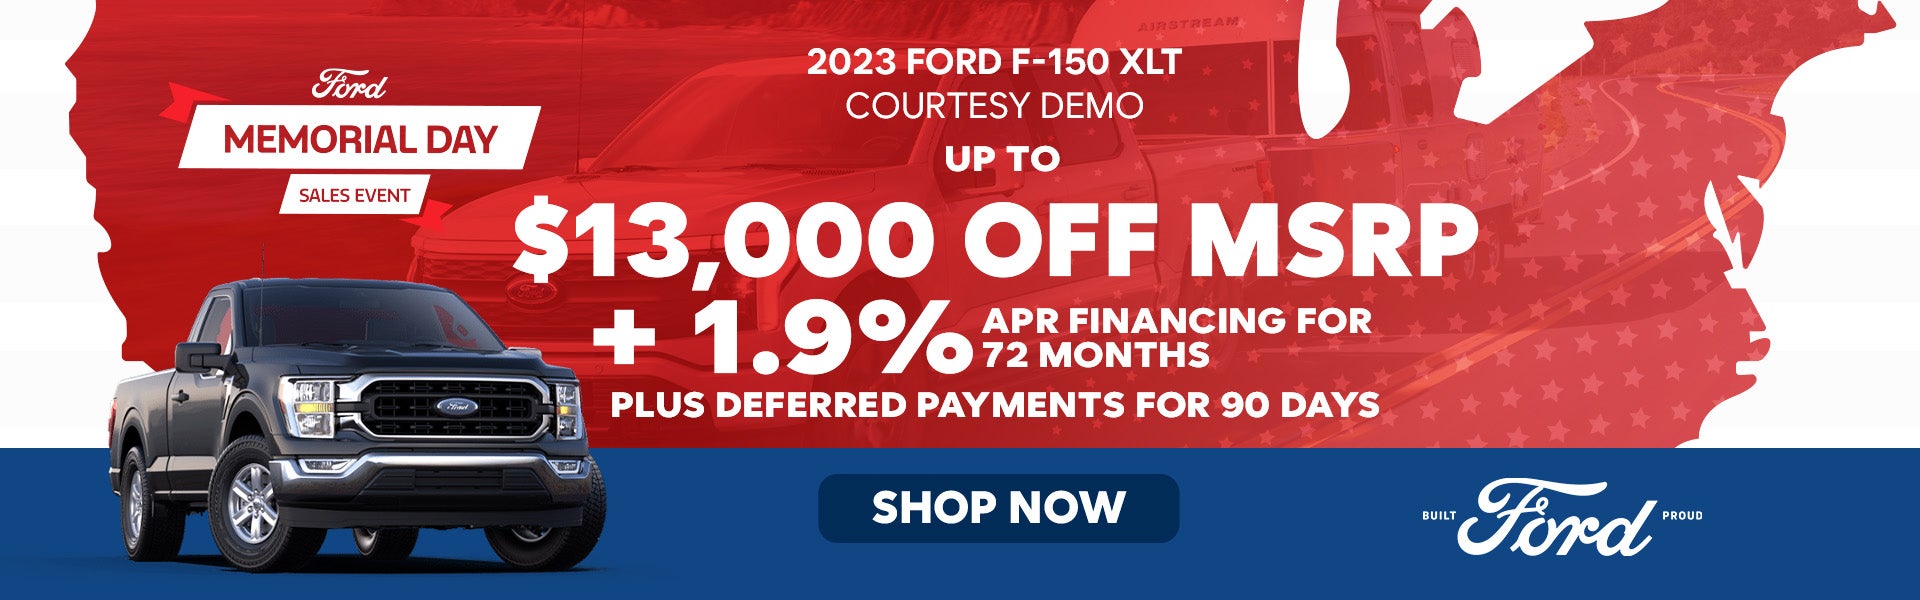 2023 Ford F-150 XLT Courtesy Demo